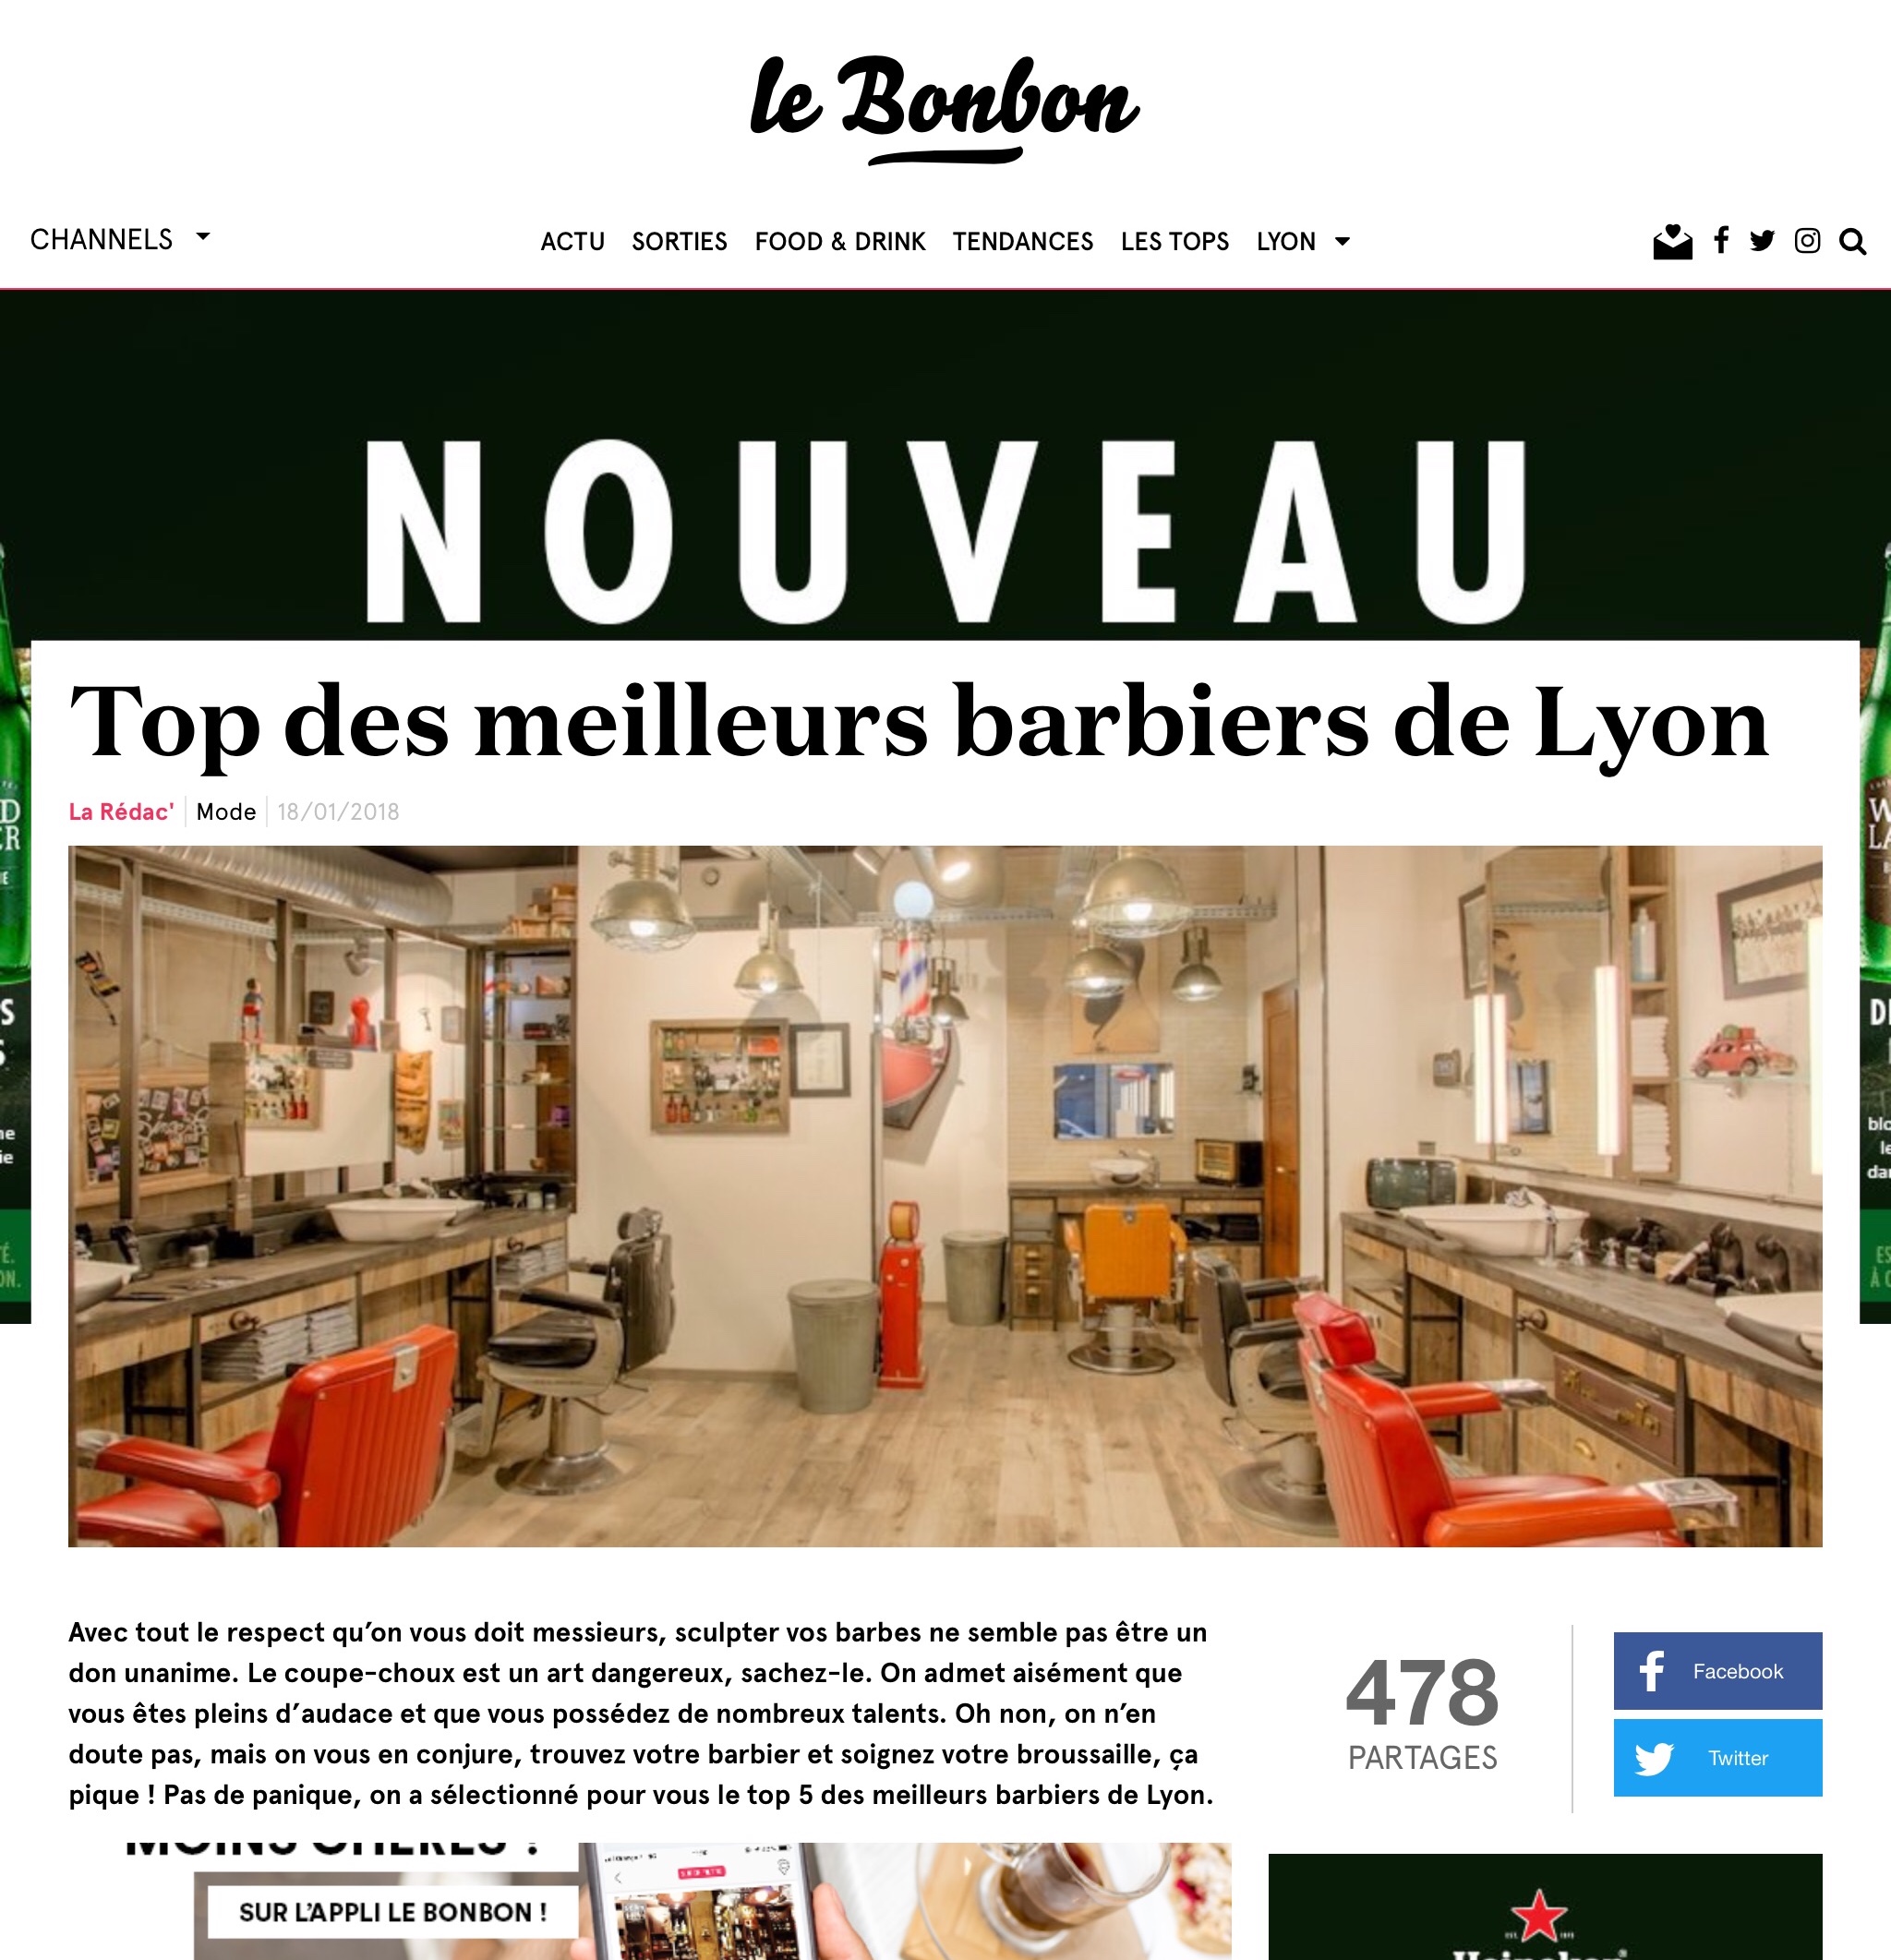 Top 5 barbiers Lyon Le Bonbon 1